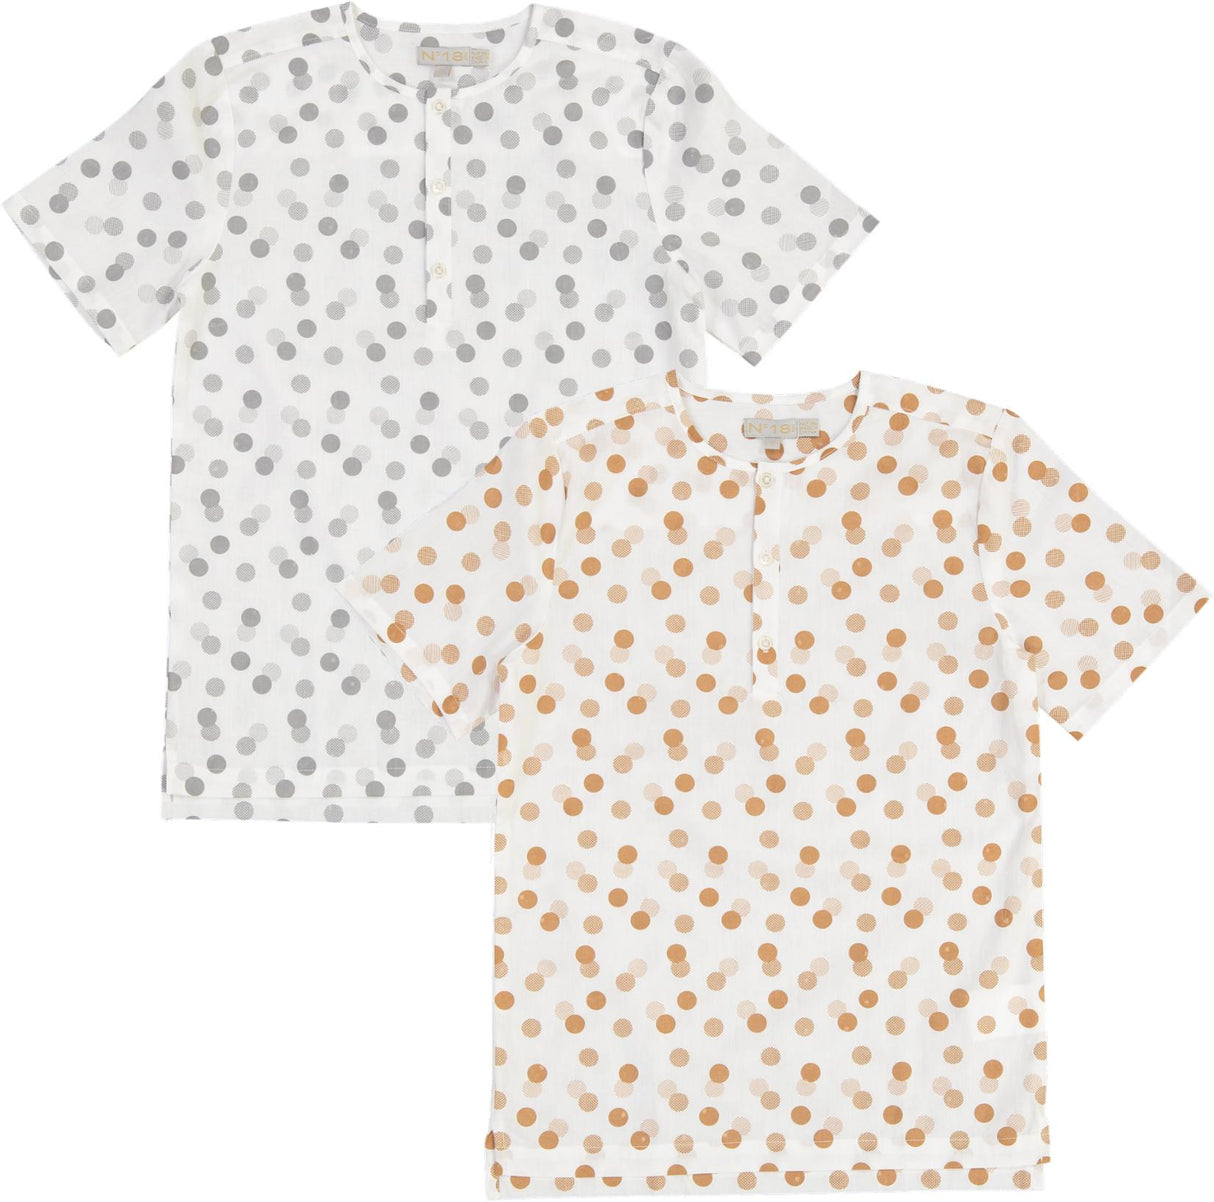 N° 18 Kids Boys Dot Print Short Sleeve Dress Shirt - SB2CY1672